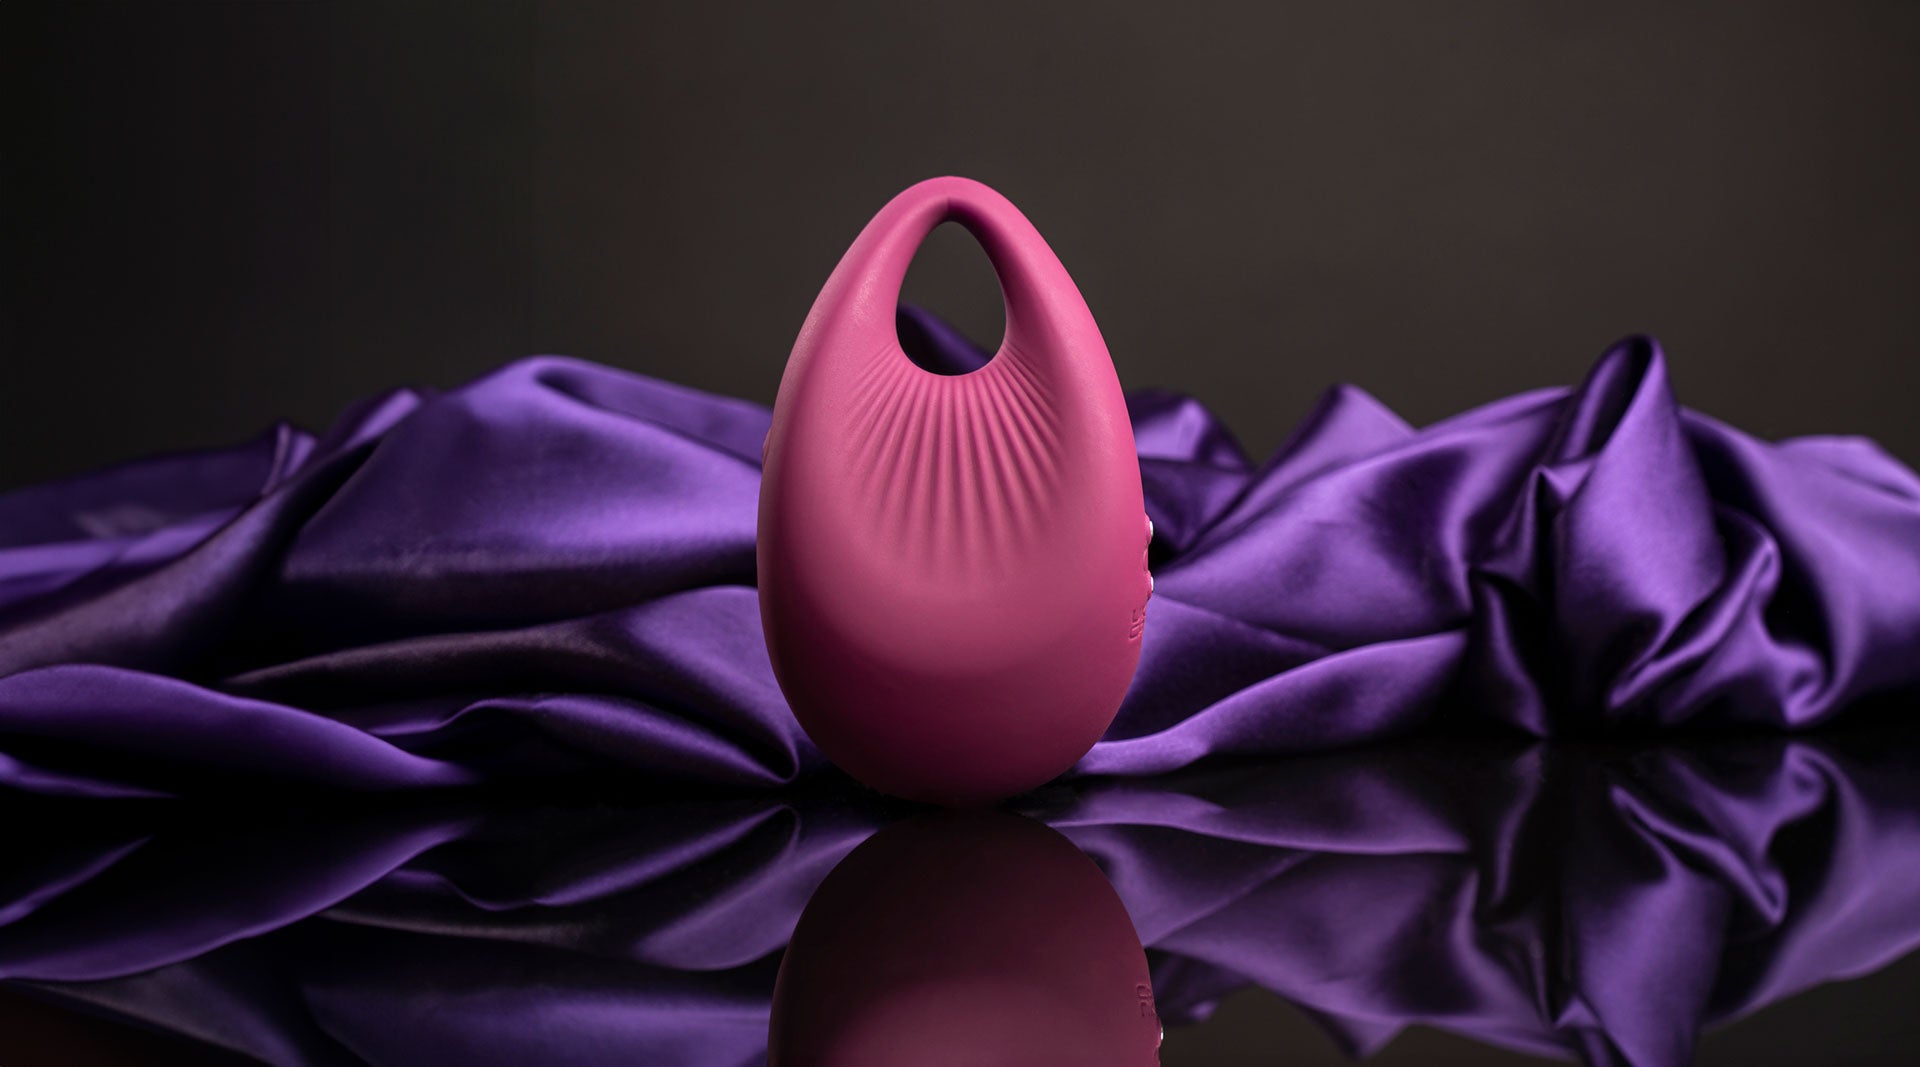 Pear shaped burgundy finger vibrator.